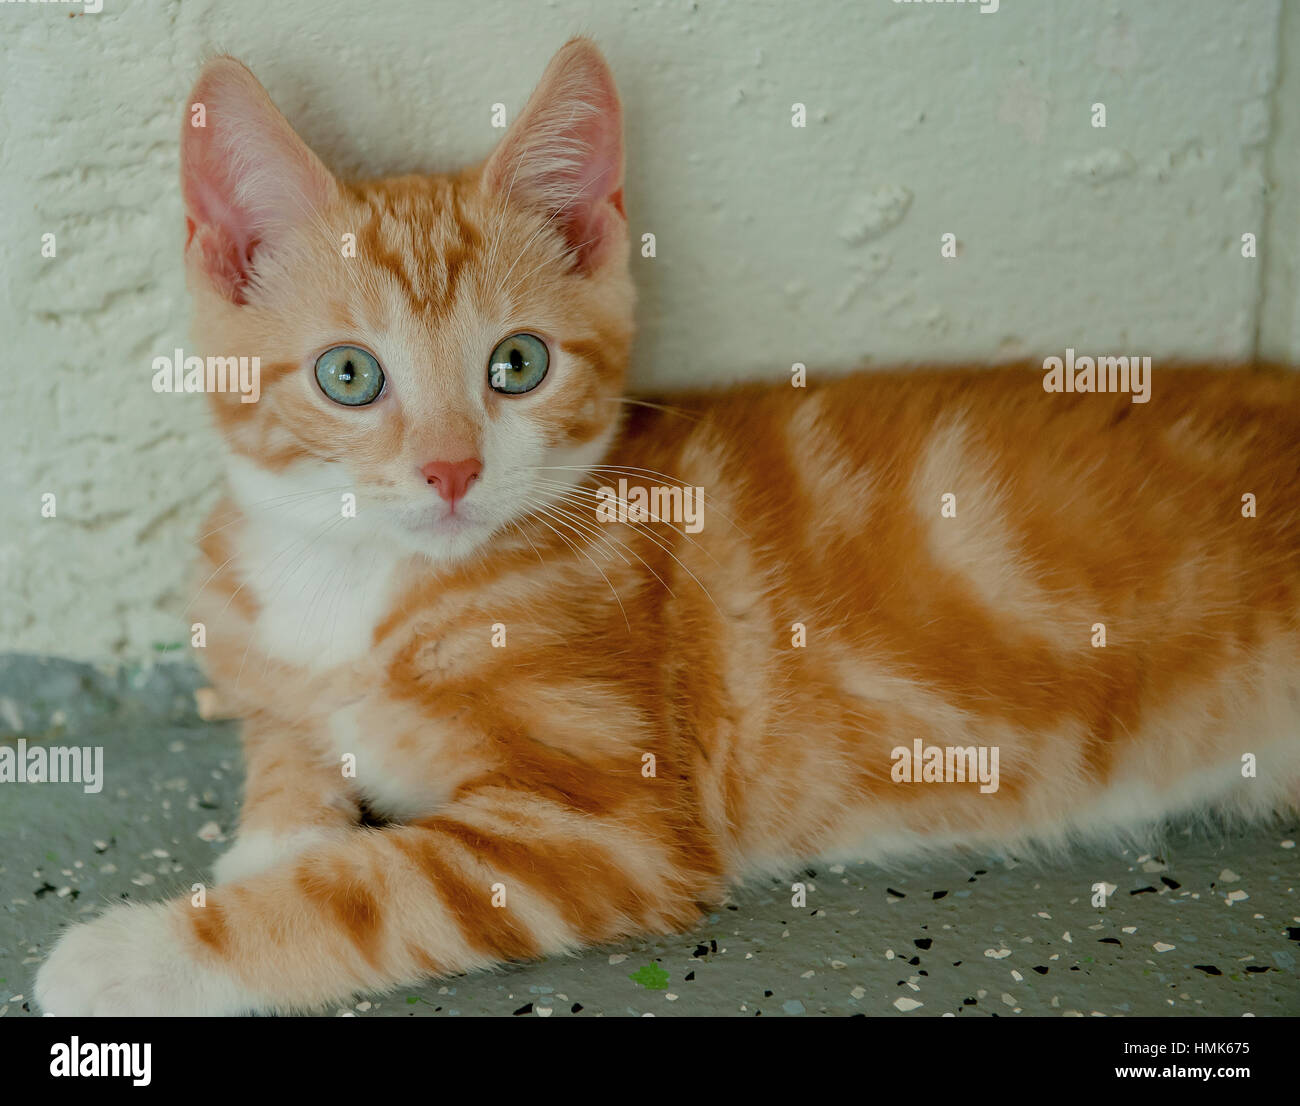 Adorable gatito atigrado naranja pelo corto 3/4 Foto de stock